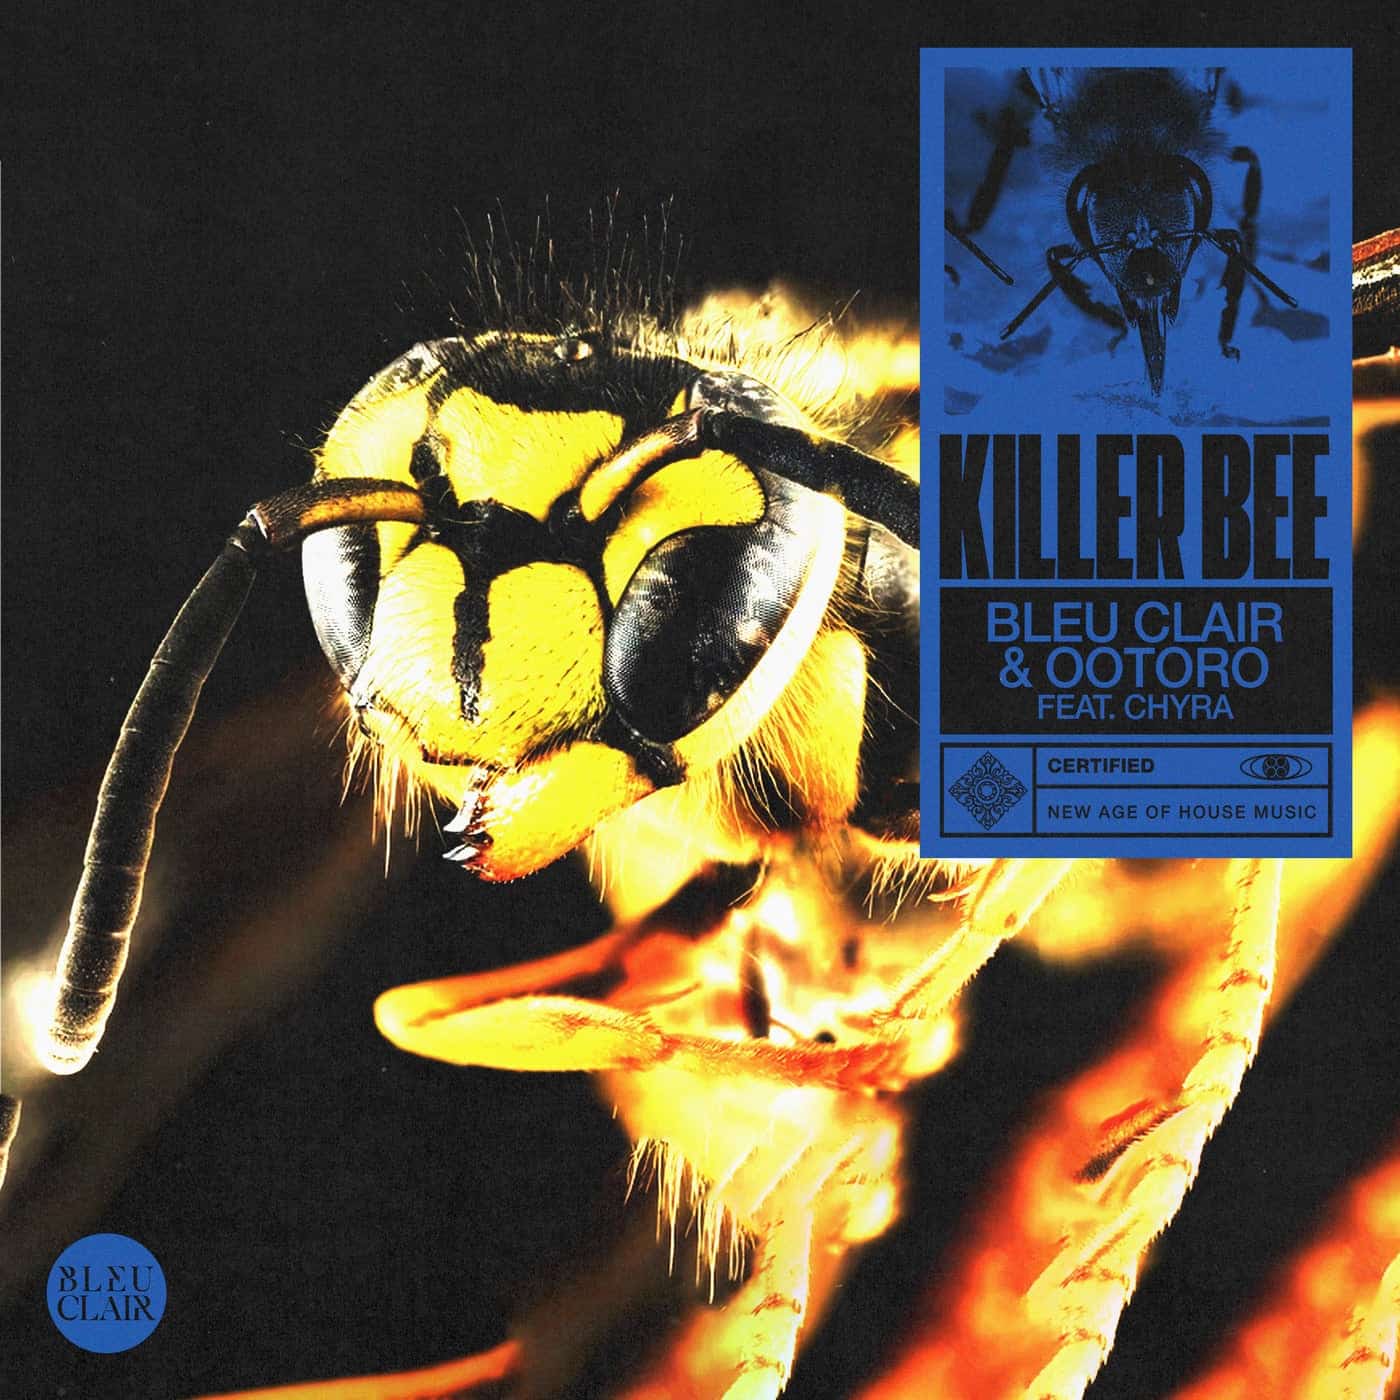 Download Bleu Clair, OOTORO, Chyra - Killer Bee on Electrobuzz